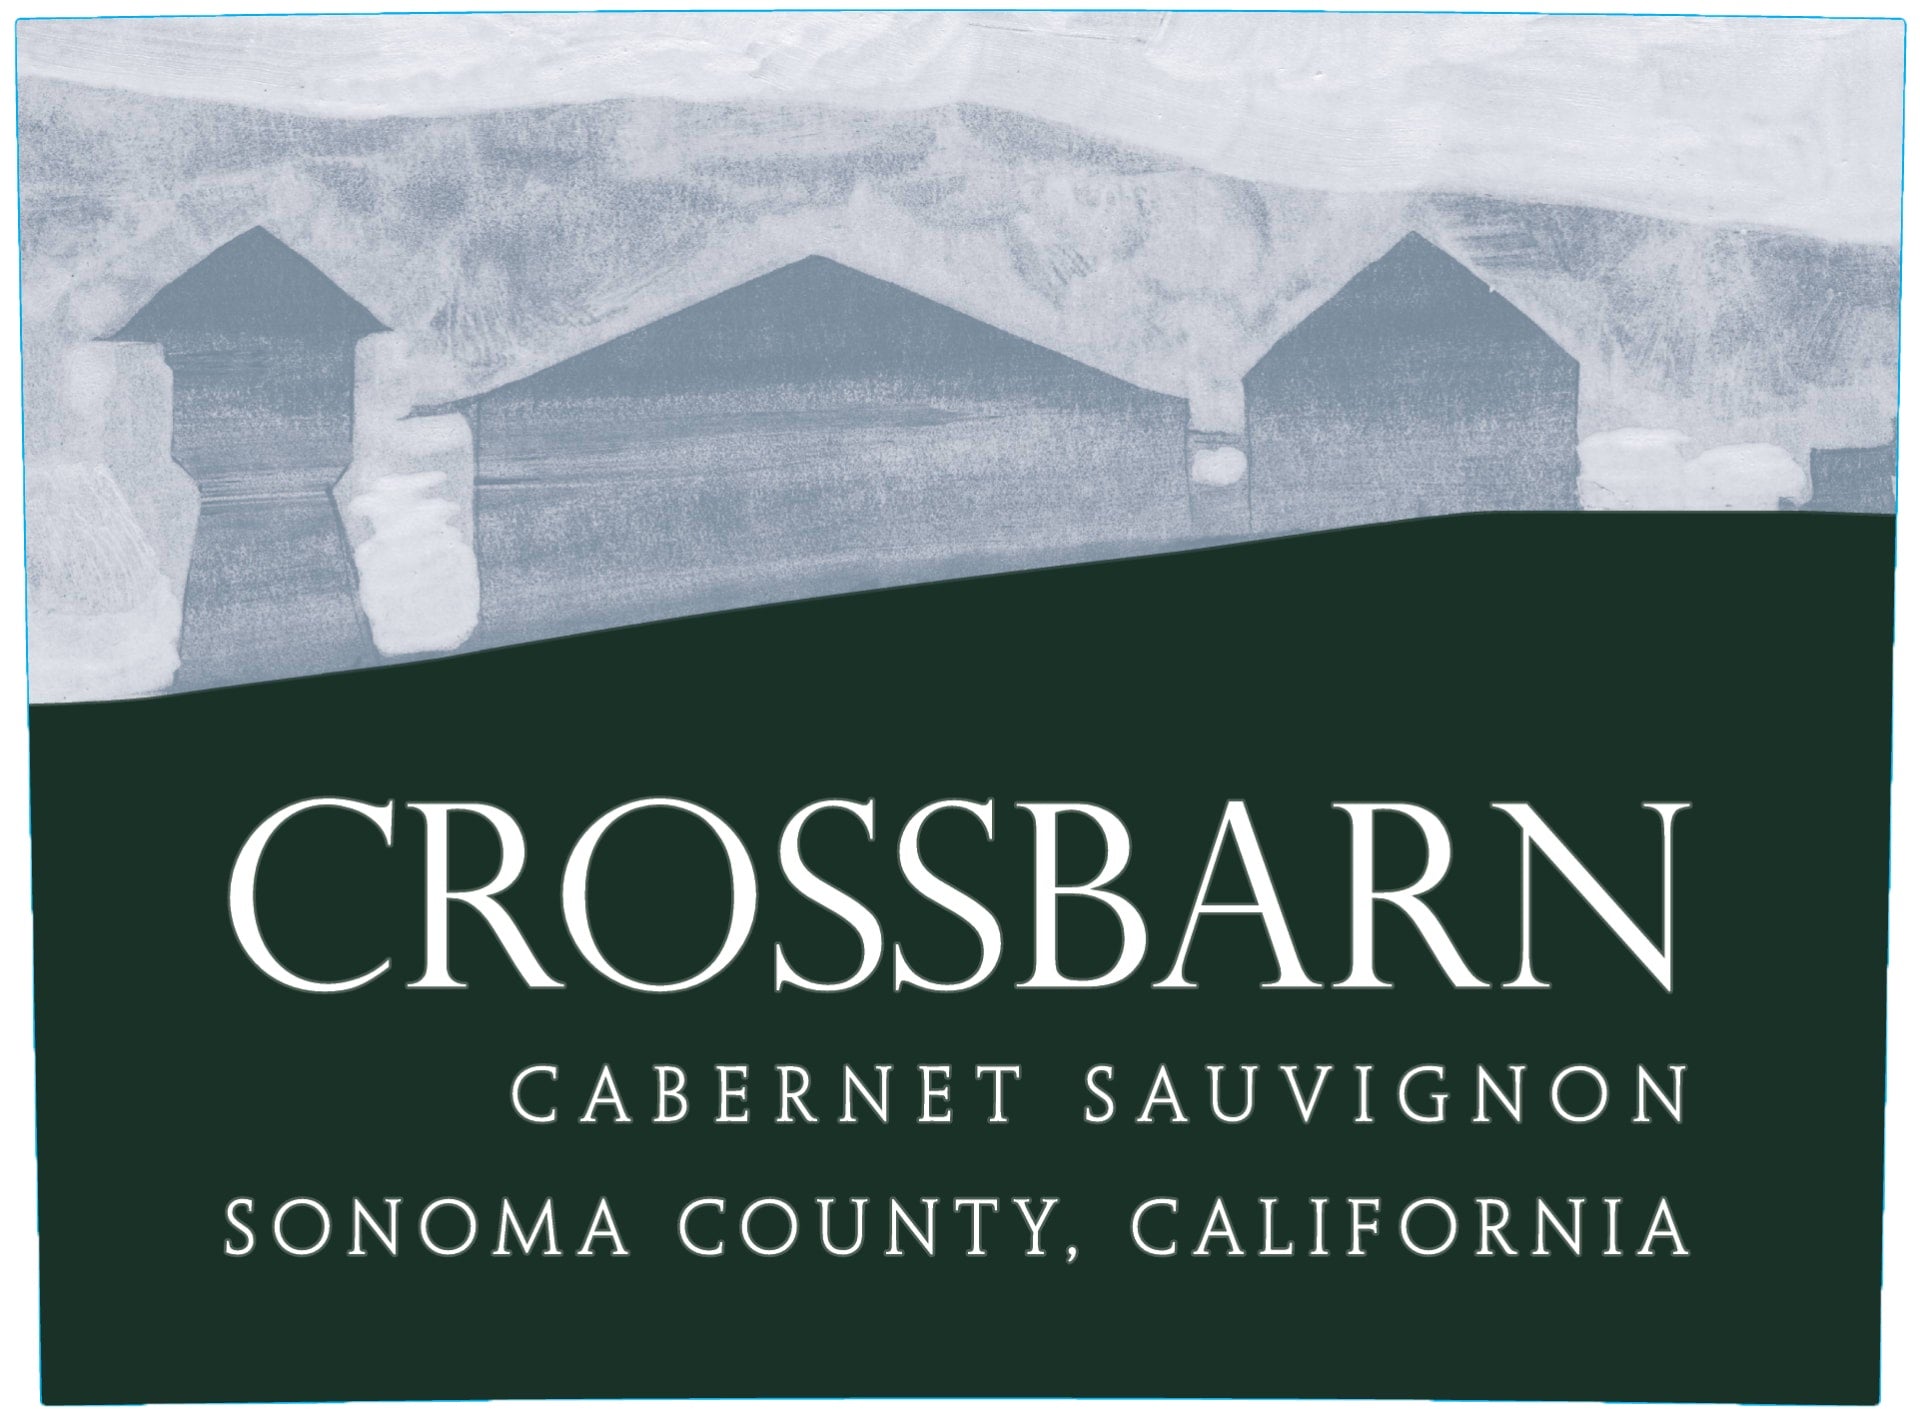 Crossbarn 2019 Sonoma County Cabernet Sauvignon